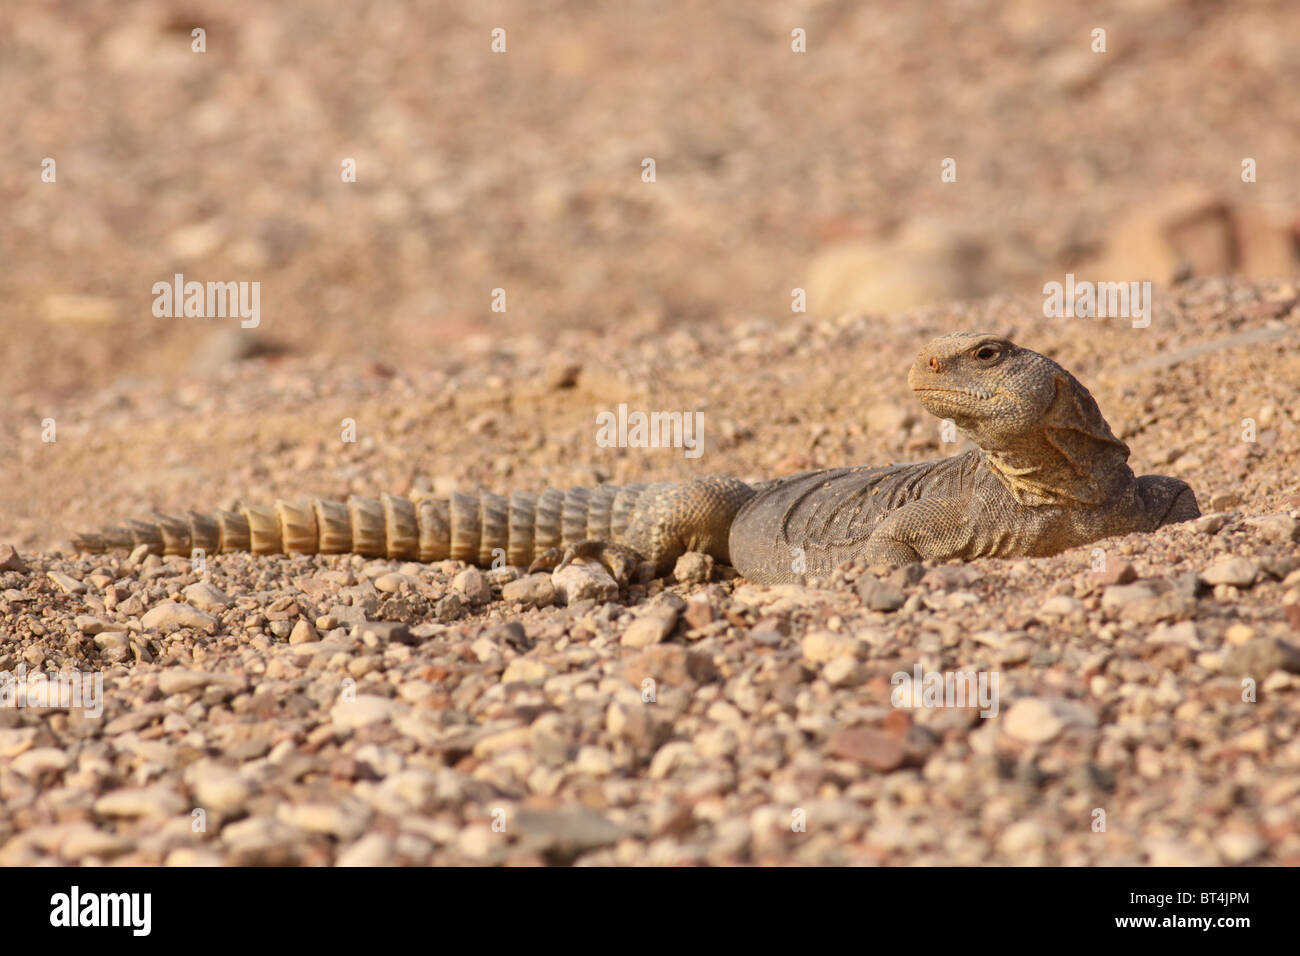 Egyptian Mastigure (Uromastyx aegyptia), AKA Leptien's Mastigure, or Egyptian dab lizard. Stock Photo